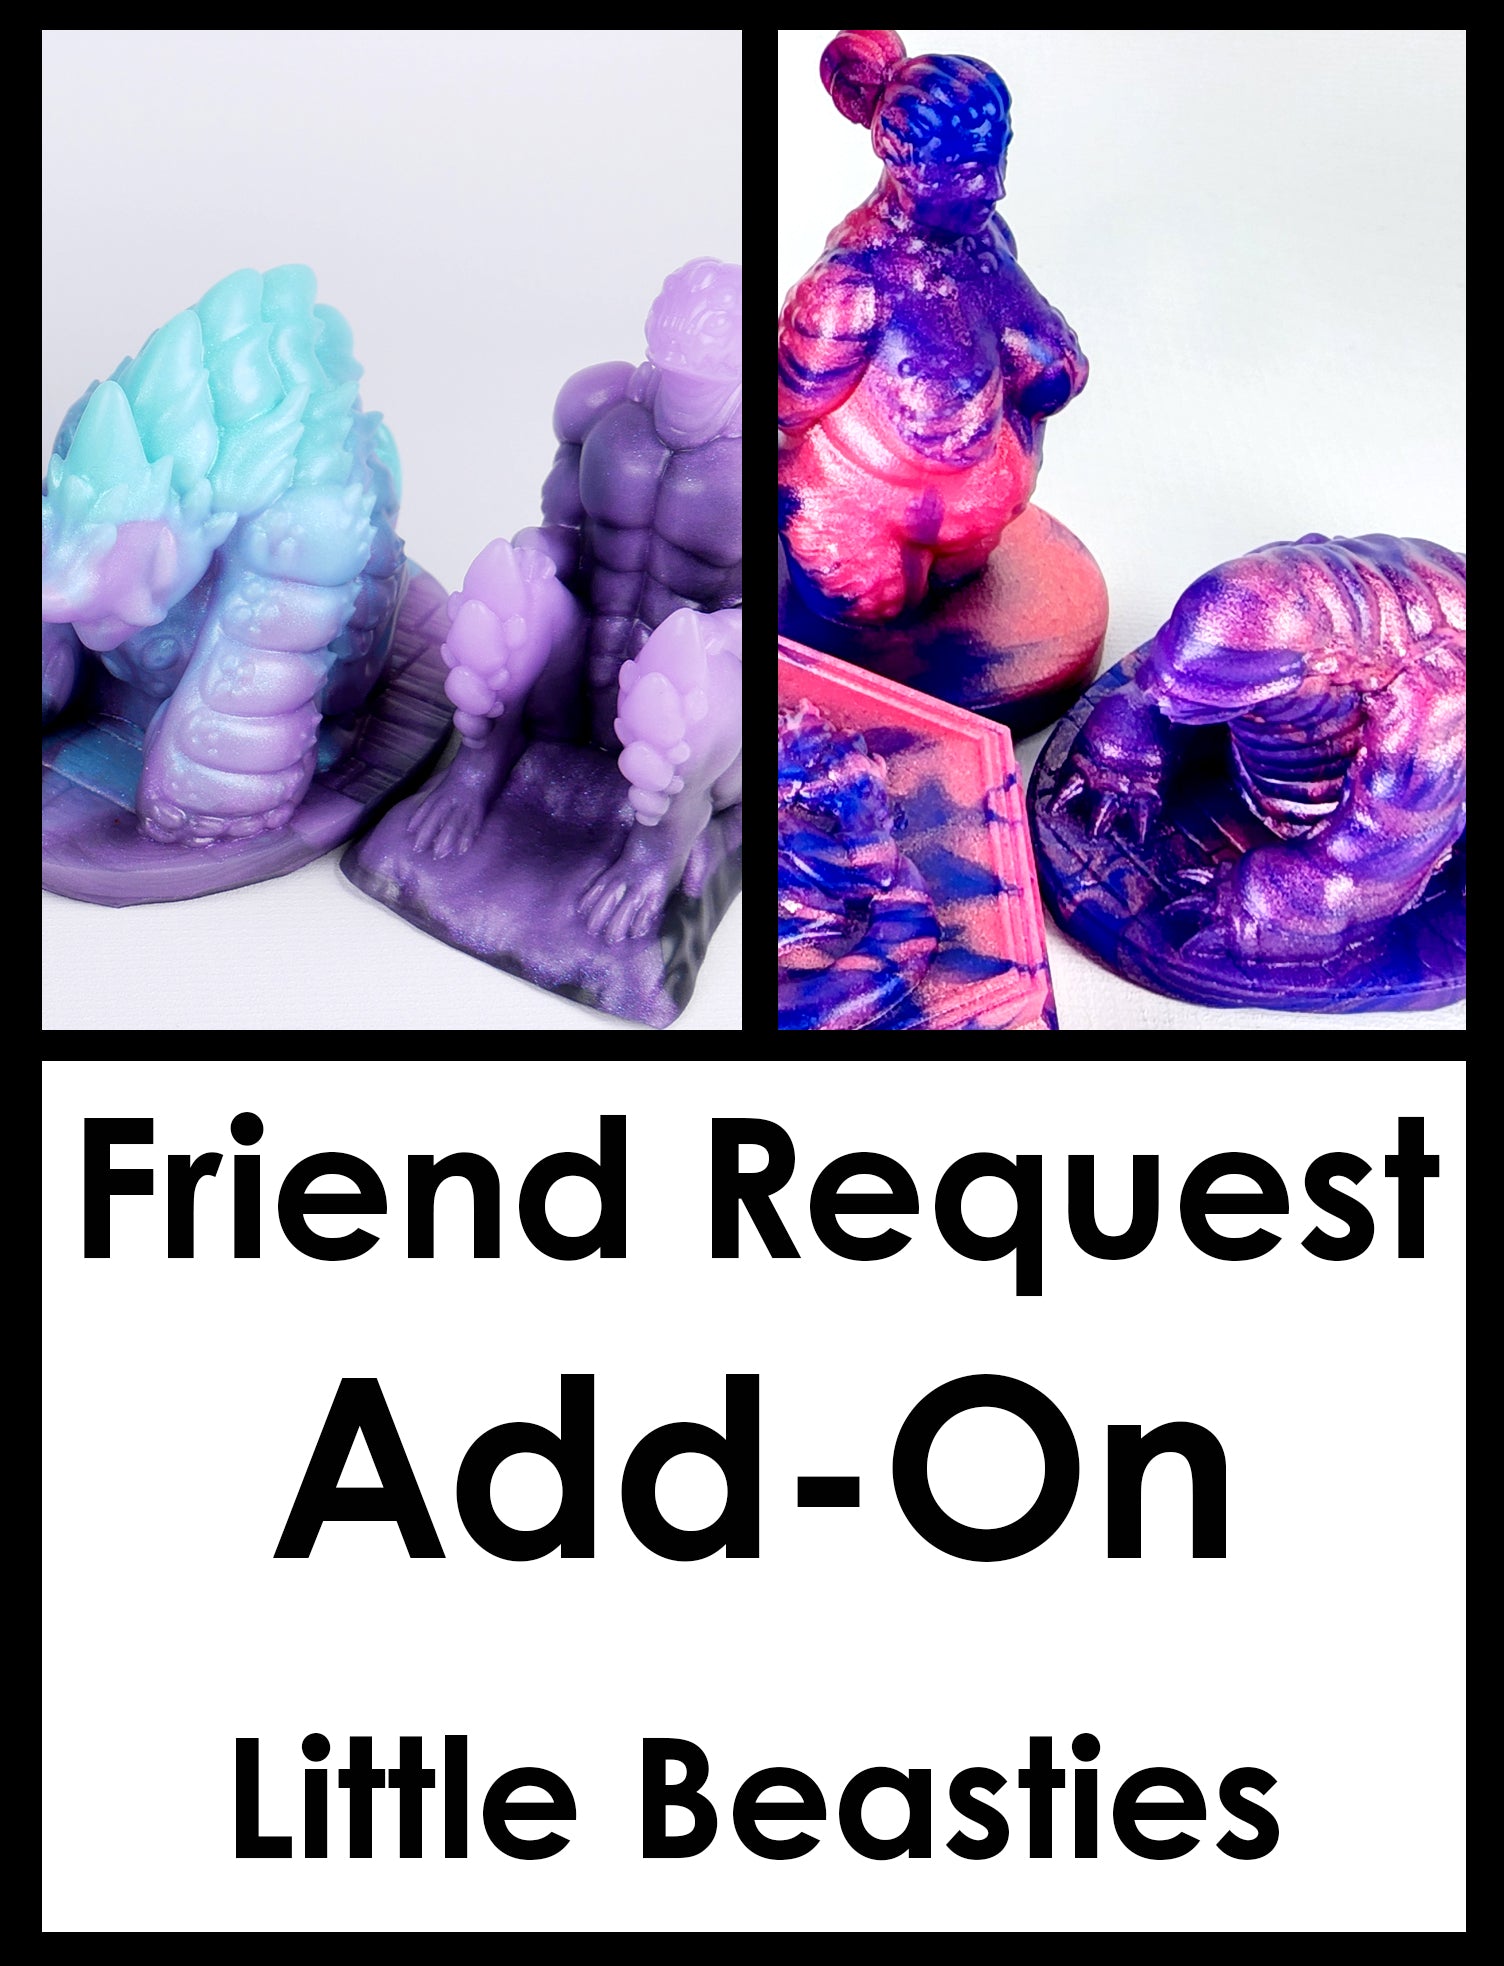 Friend Request Add-On: Little Beasties